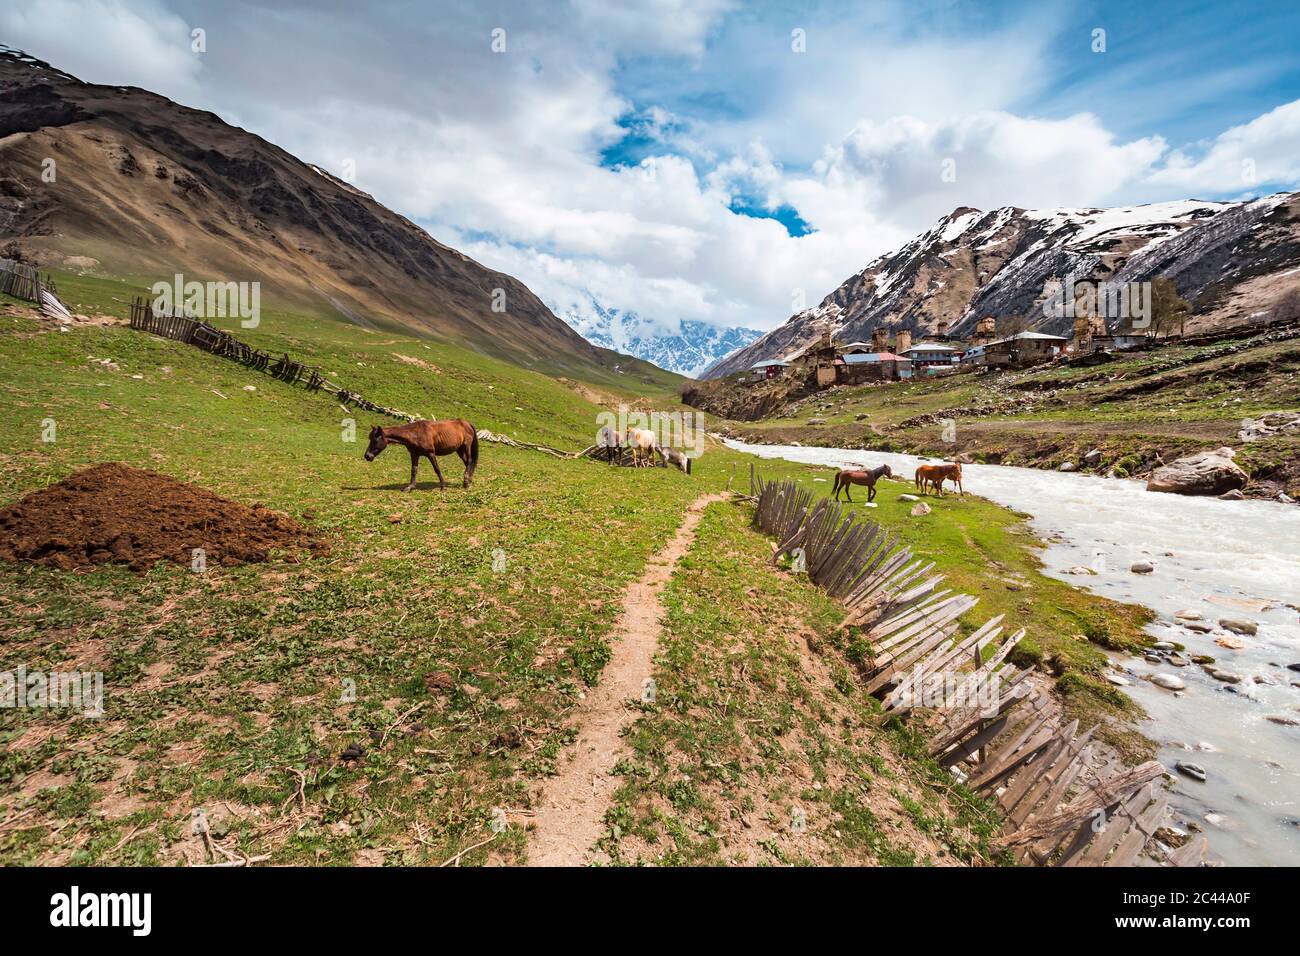 Georgia, Svaneti, Ushguli, Horses grazing along bank of Enguri River with medieval village in background Stock Photo